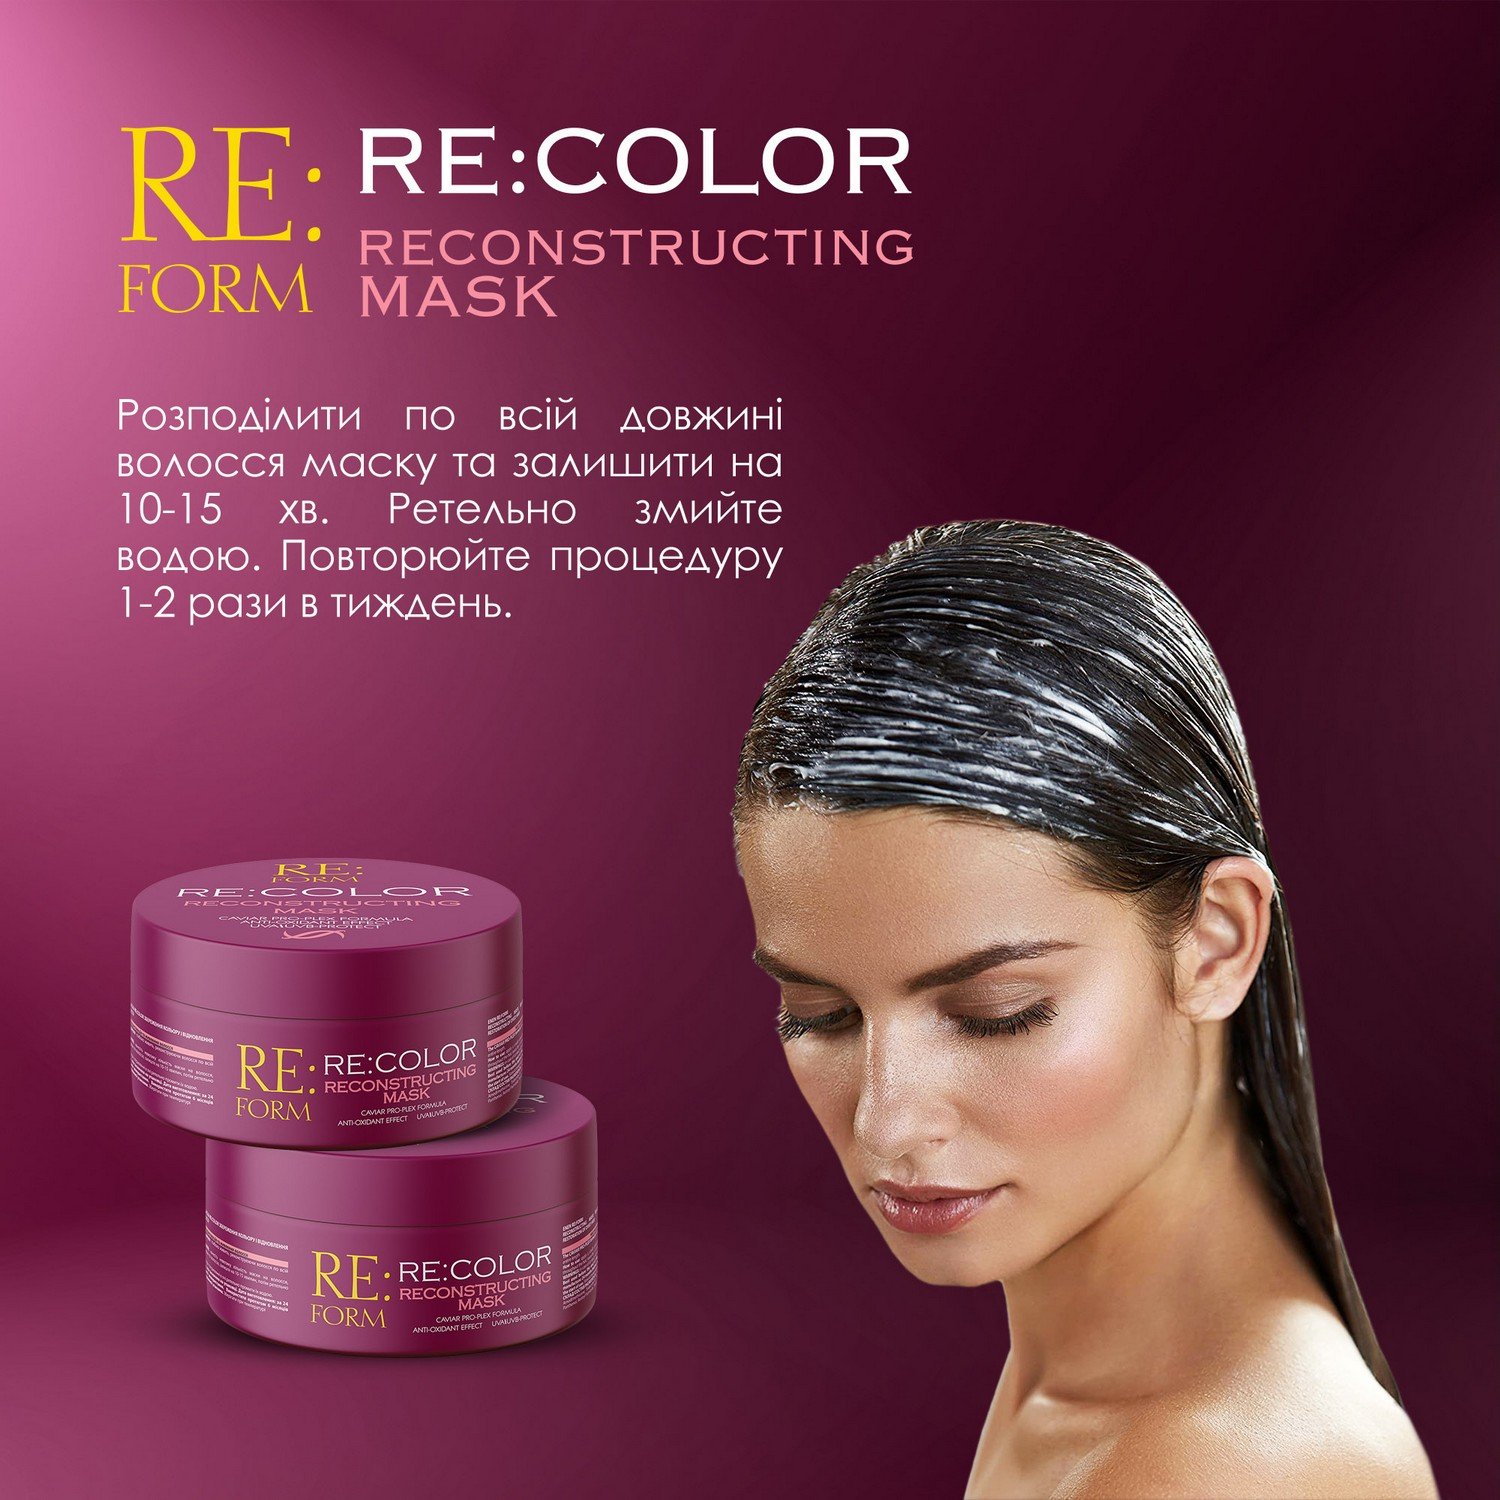 Реконструирующая маска Re:form Re:color Сохранение цвета и восстановление окрашенных волос, 230 мл - фото 7